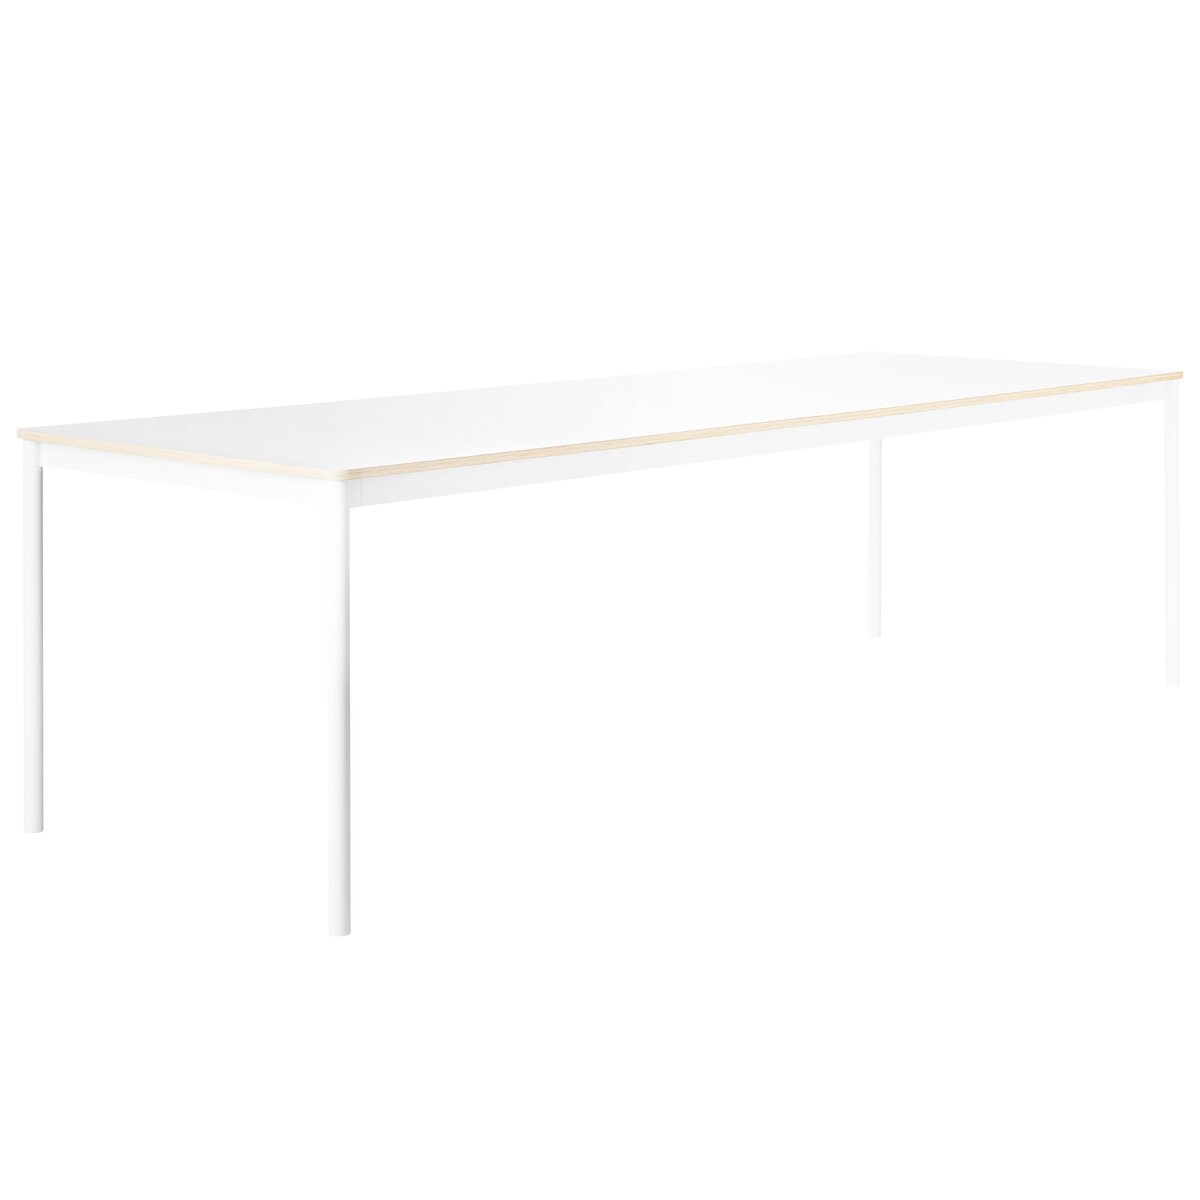 Muuto Base pöytä 190 x 85 cm, laminaatti vanerireunalla, valkoinen